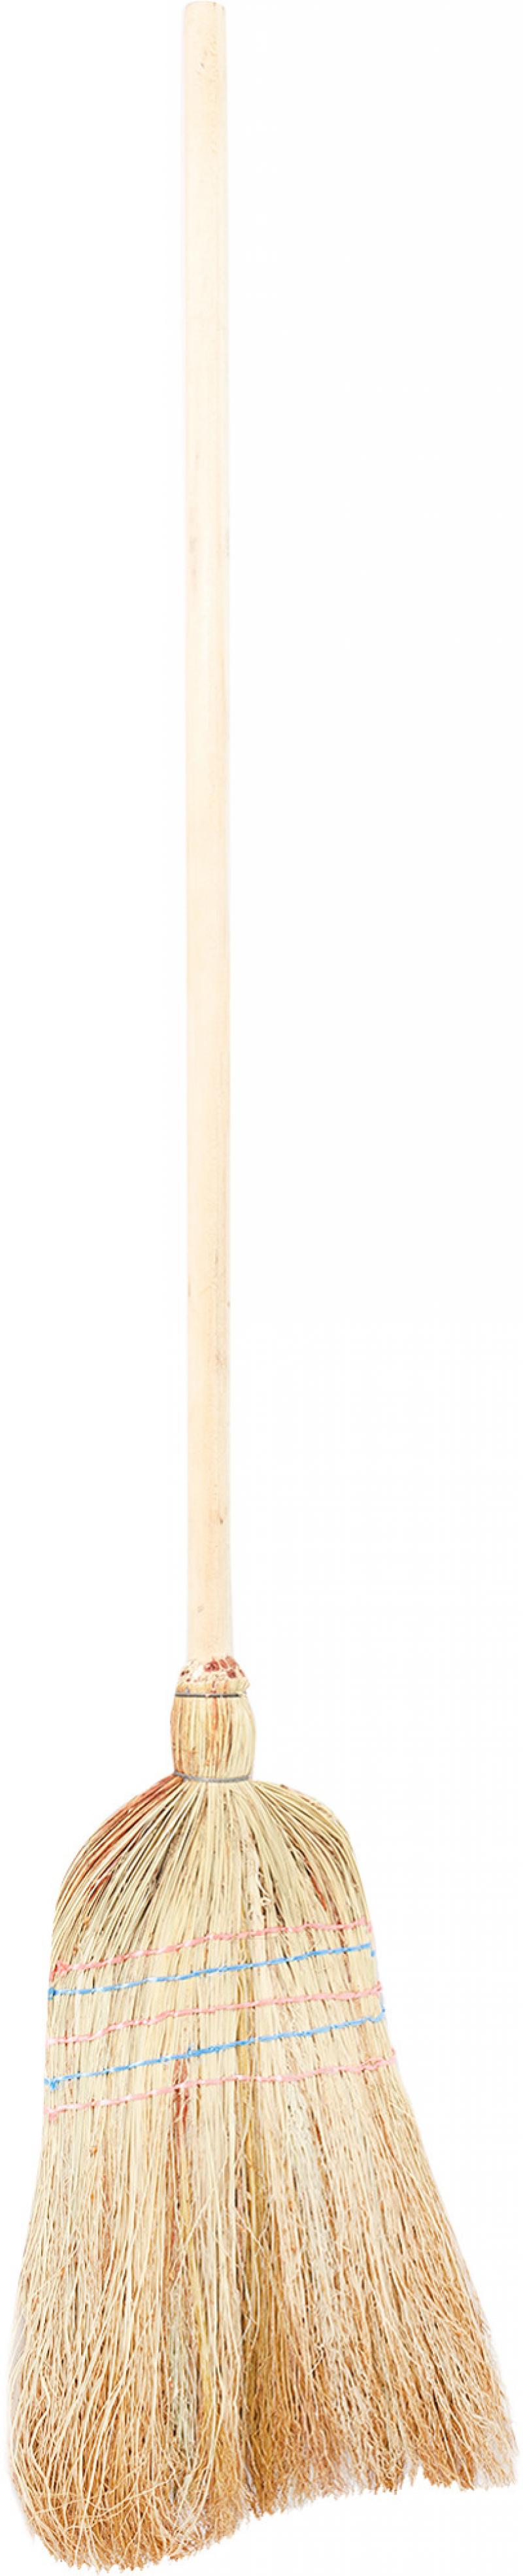 Метла садовая с деревянной ручкой